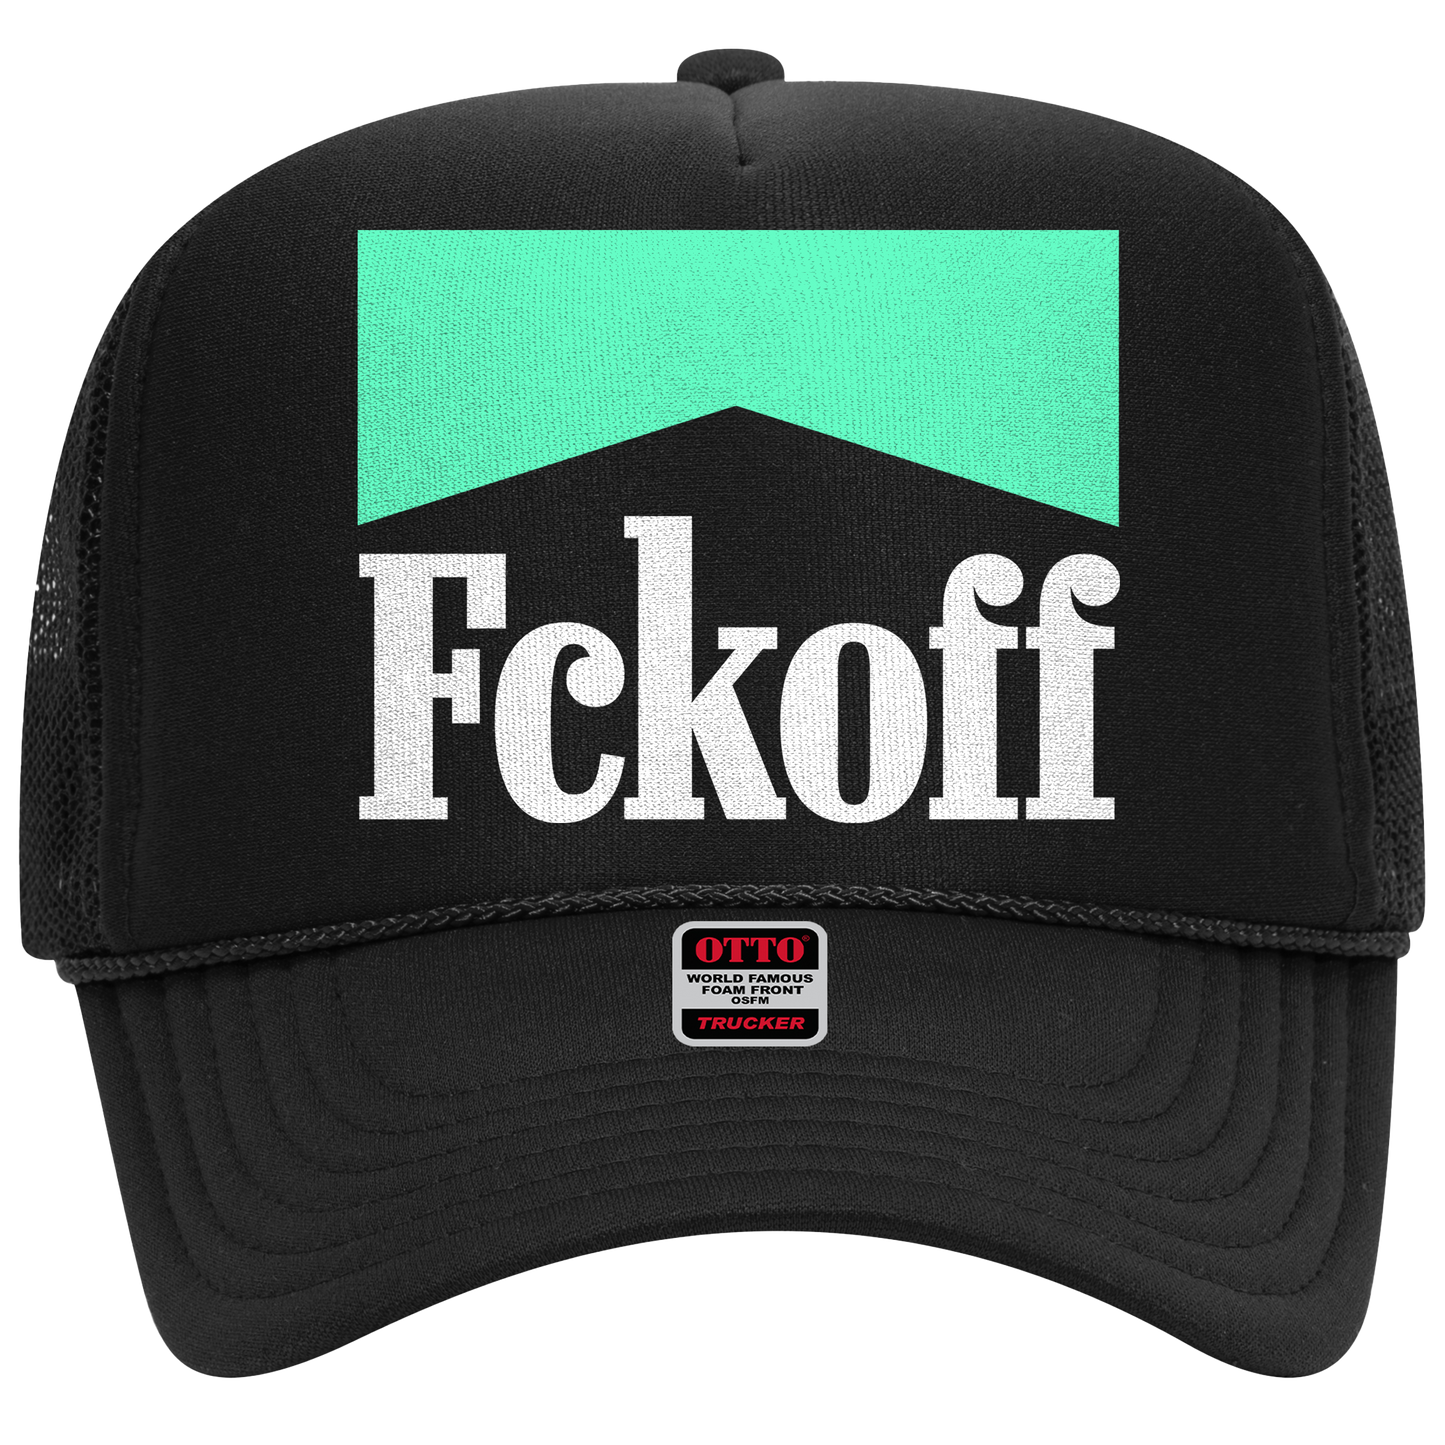 FCKOFF x Marb. Trucker Hat (Black)